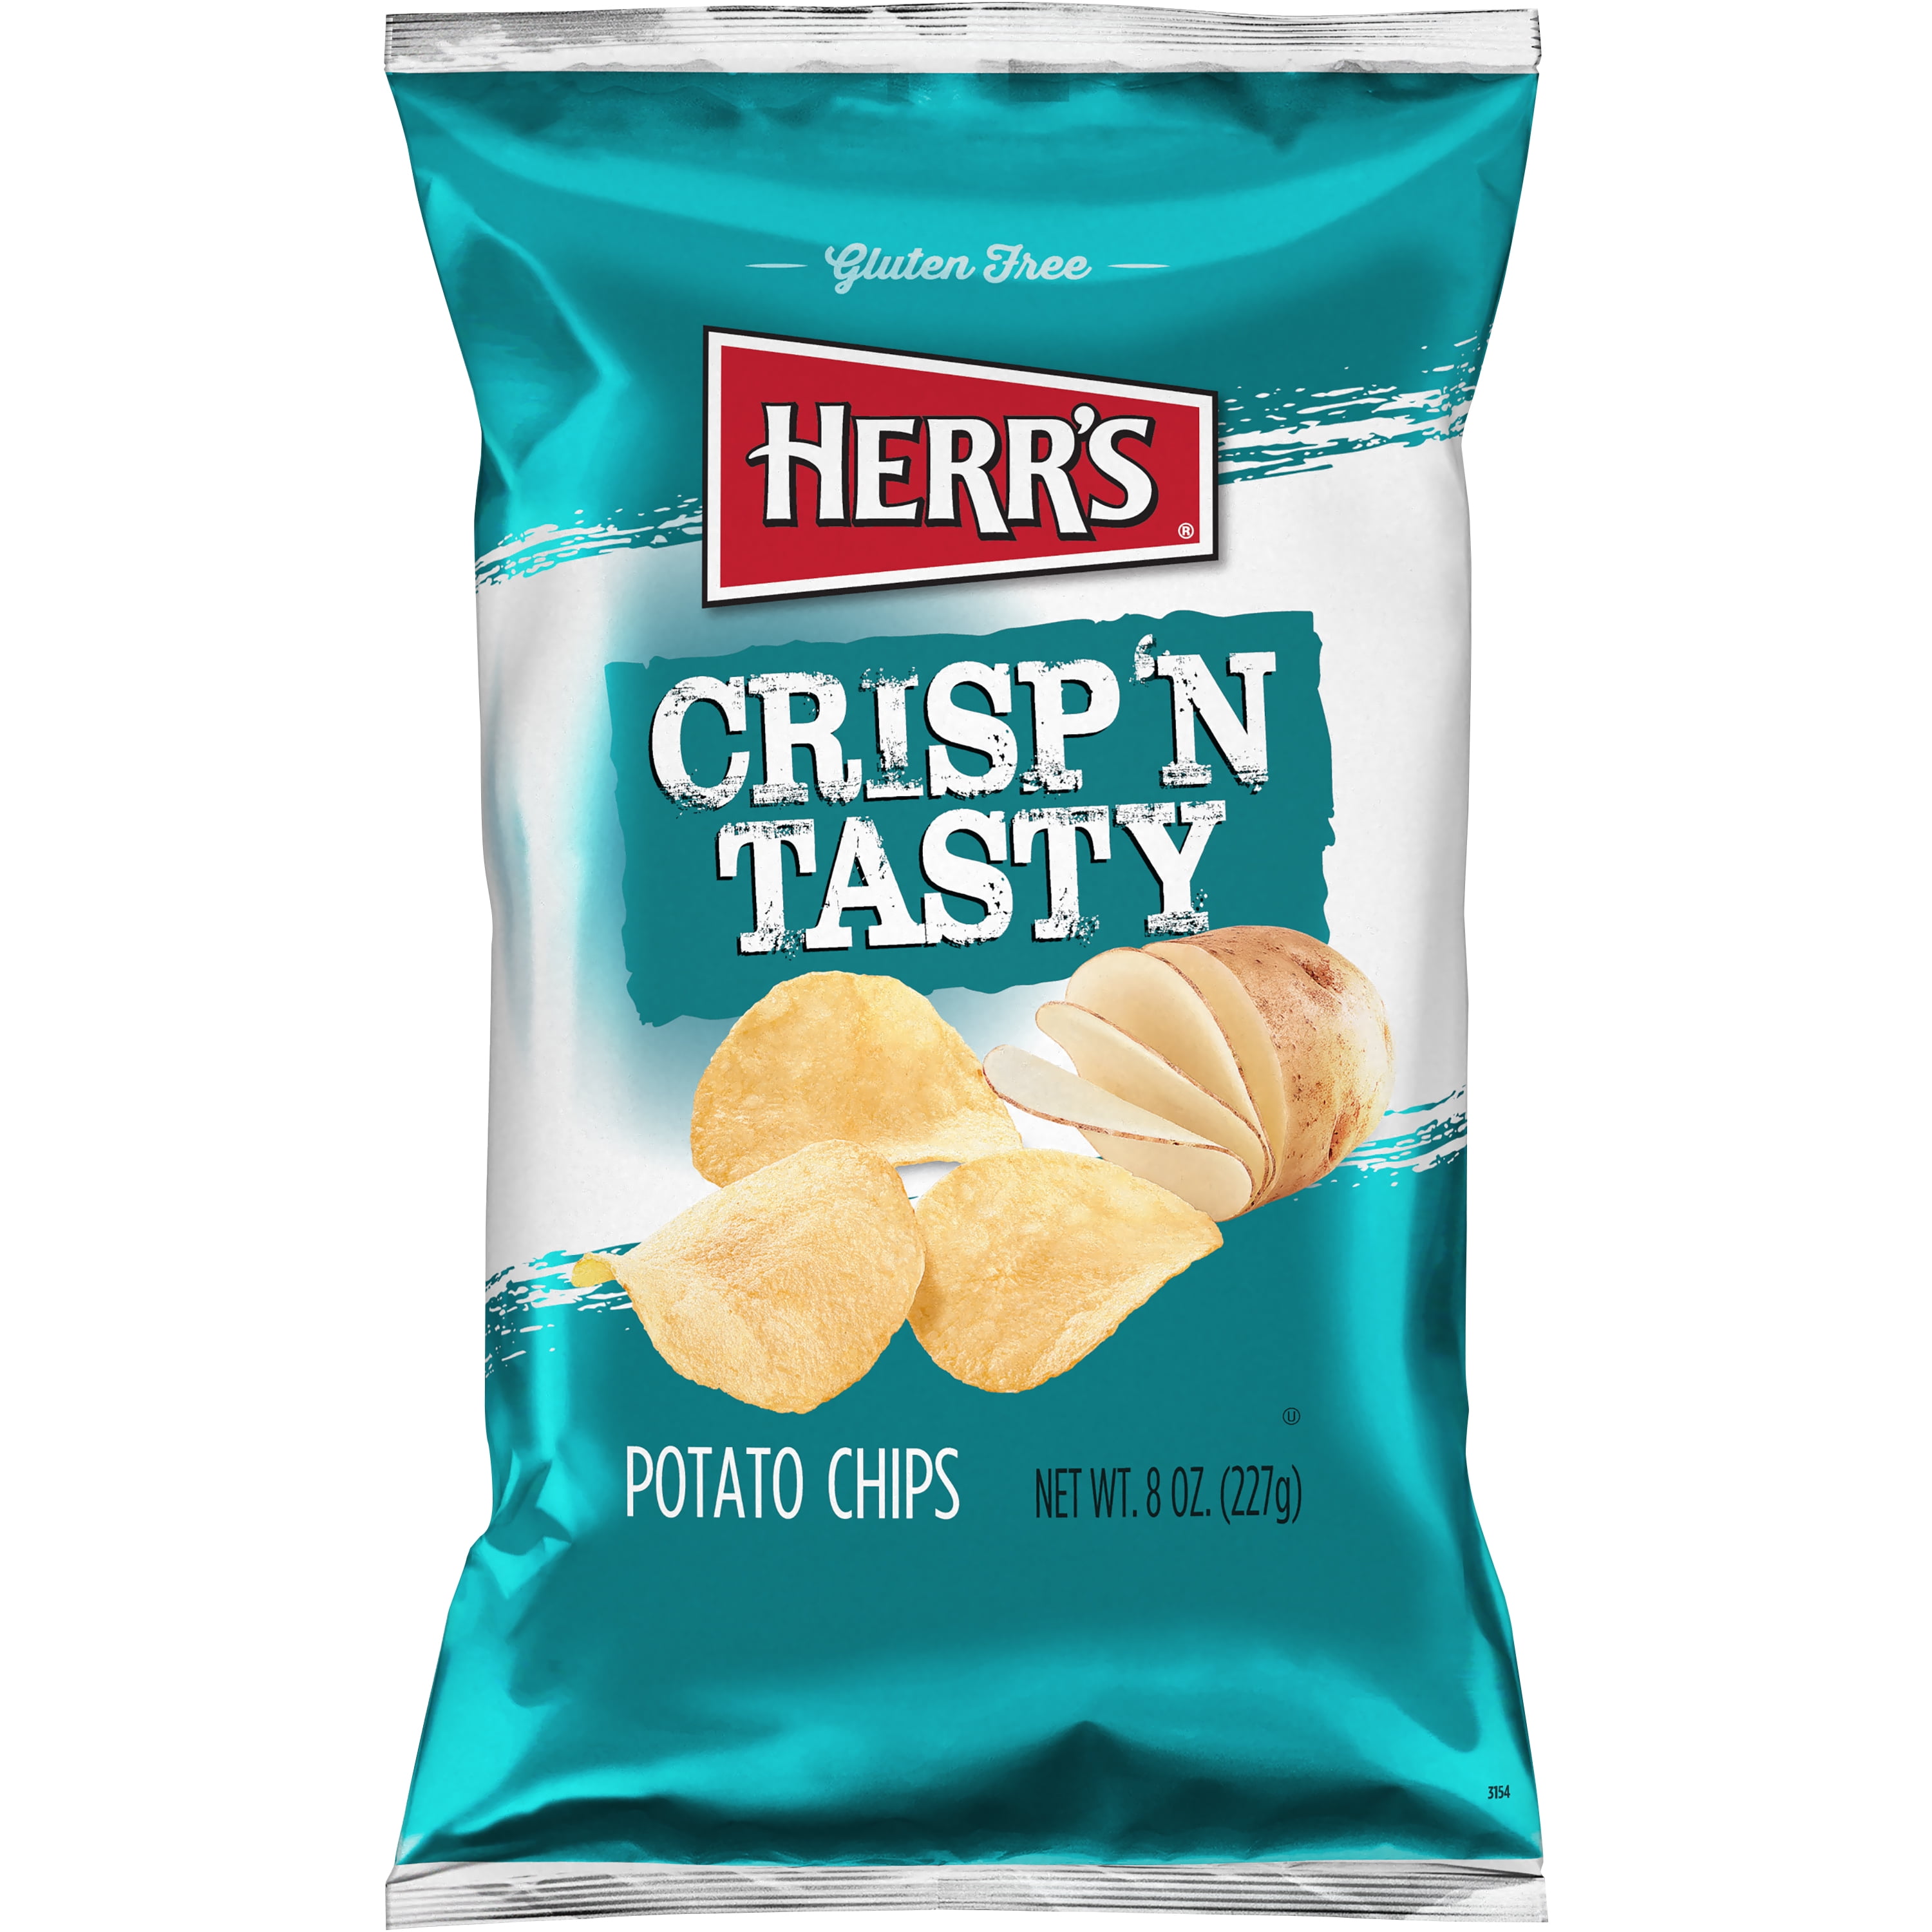 Herr's Crisp 'N Tasty Regular Potato Chips 8 ounce